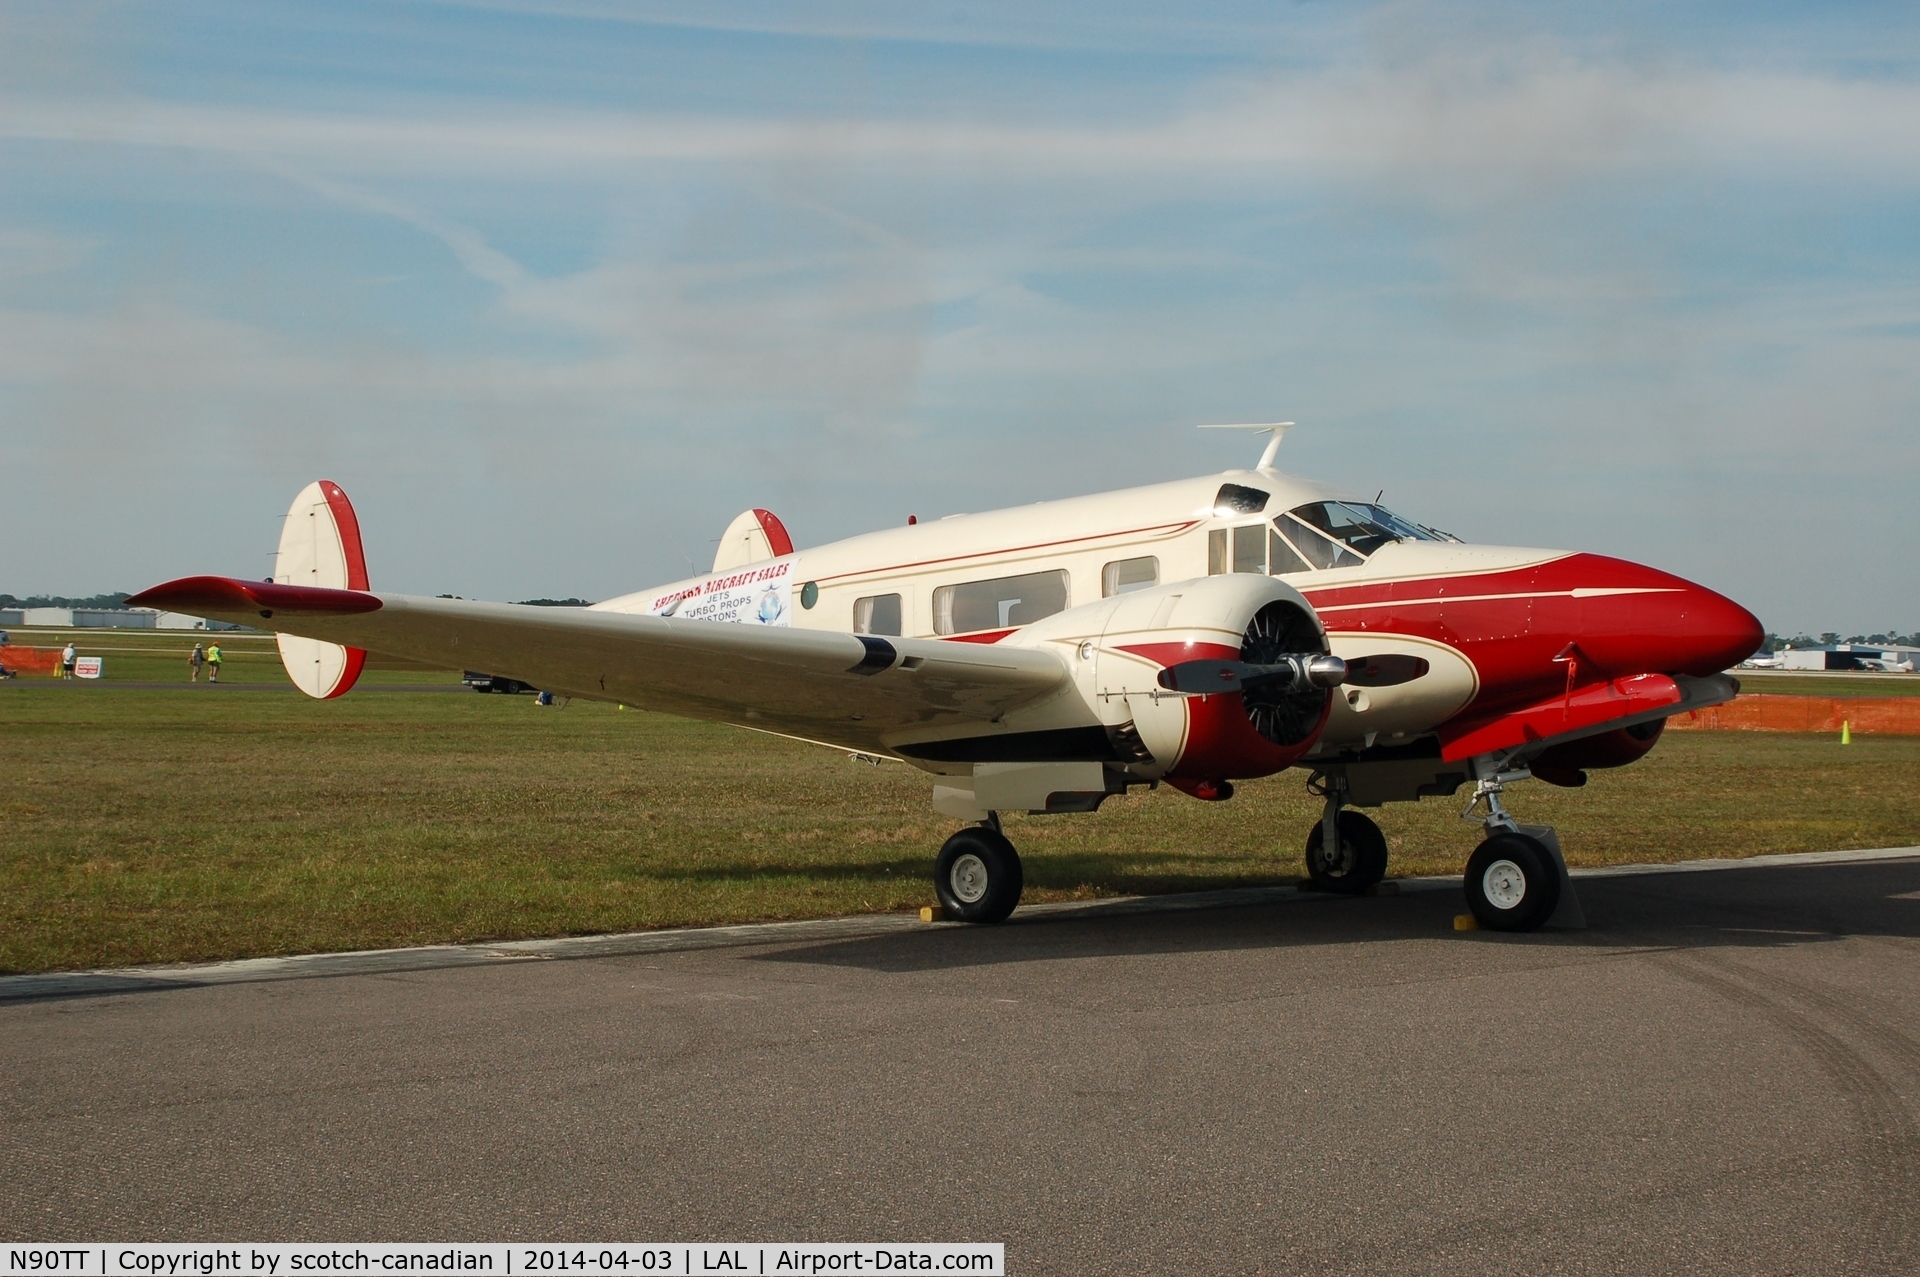 N90TT, 1957 Beech E18S C/N BA-335, 1957 Beech E18S, N90TT, at 2014 Sun n Fun, Lakeland Linder Regional Airport, Lakeland, FL